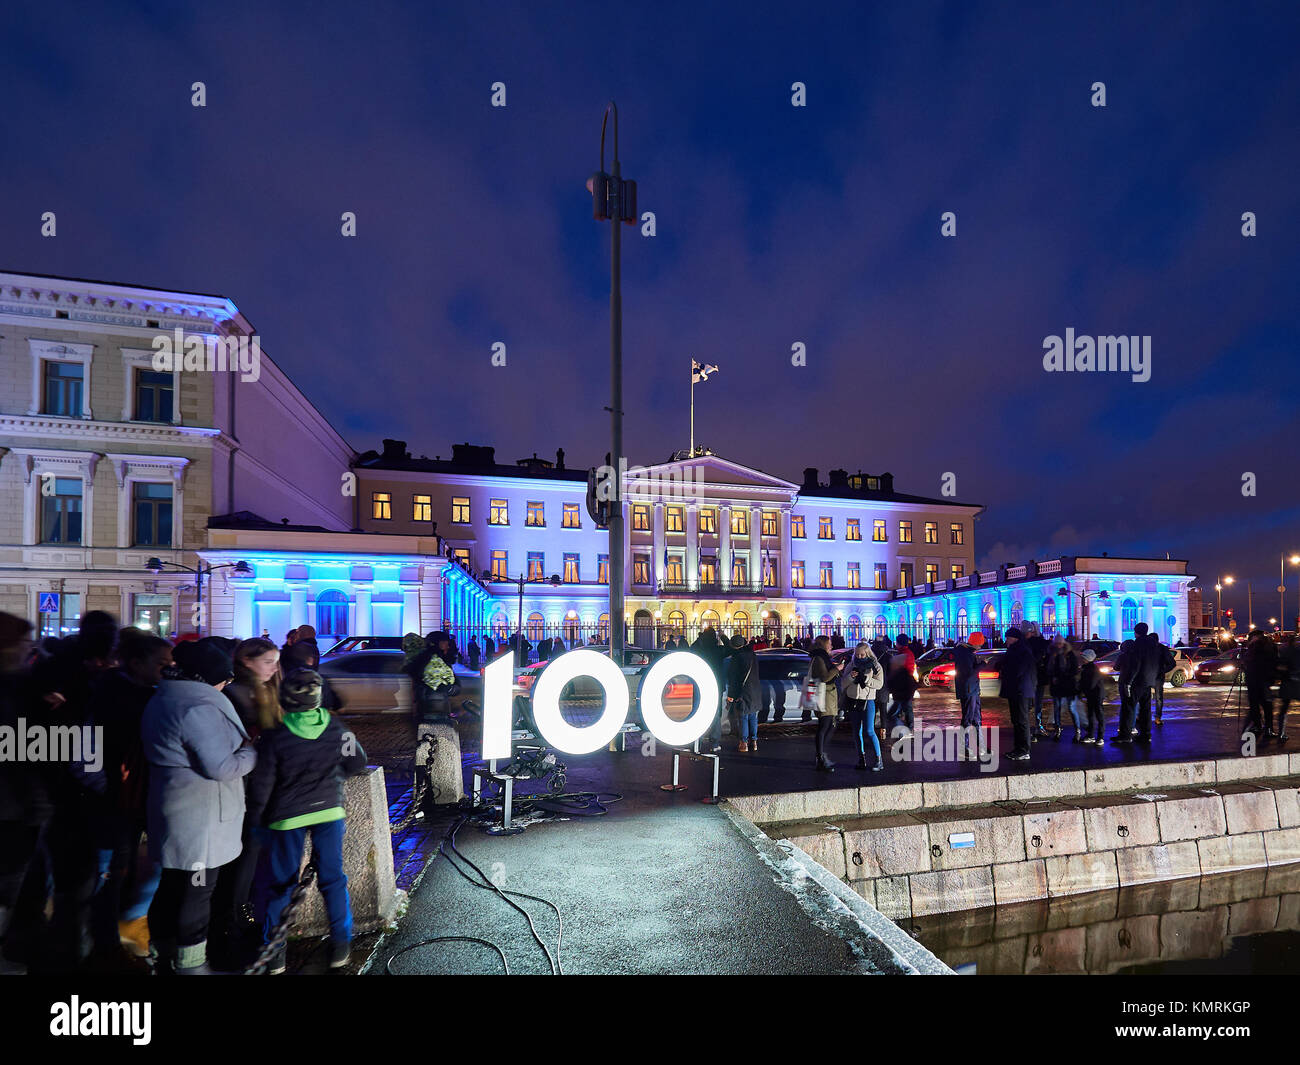 Finland 100 years Stock Photo